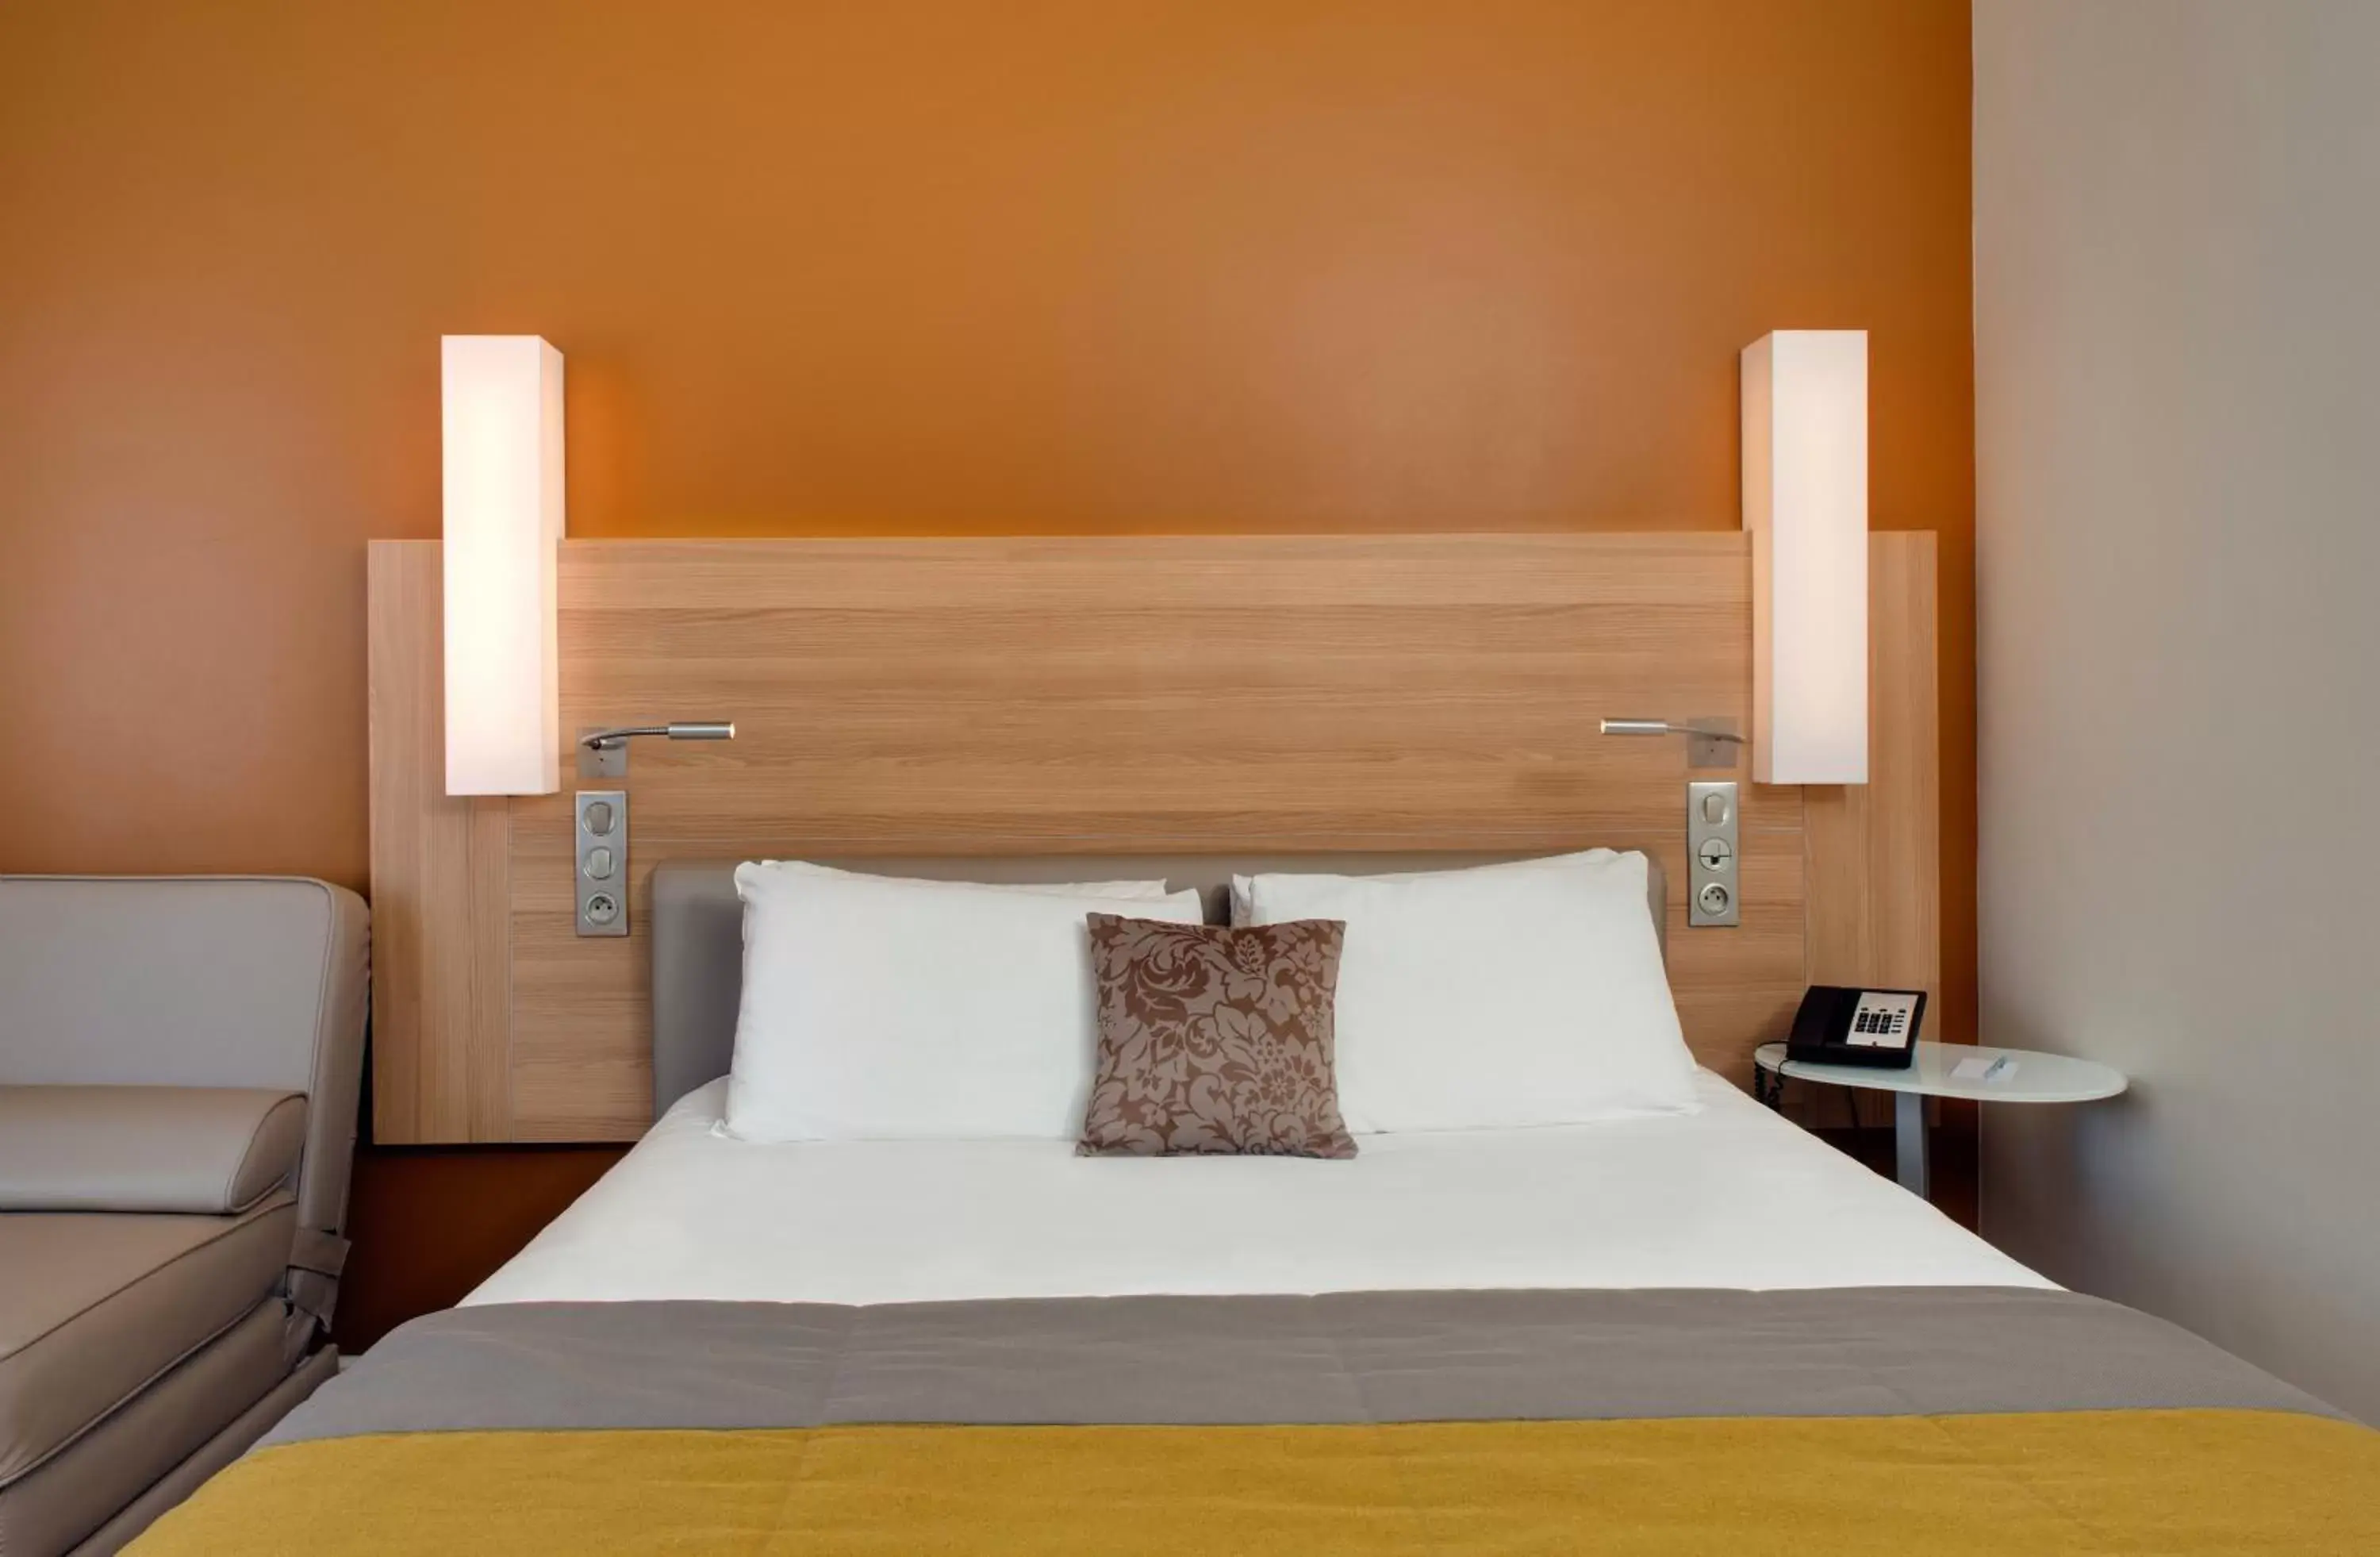 Bed in Hôtel Mercure Mâcon Bord de Saône